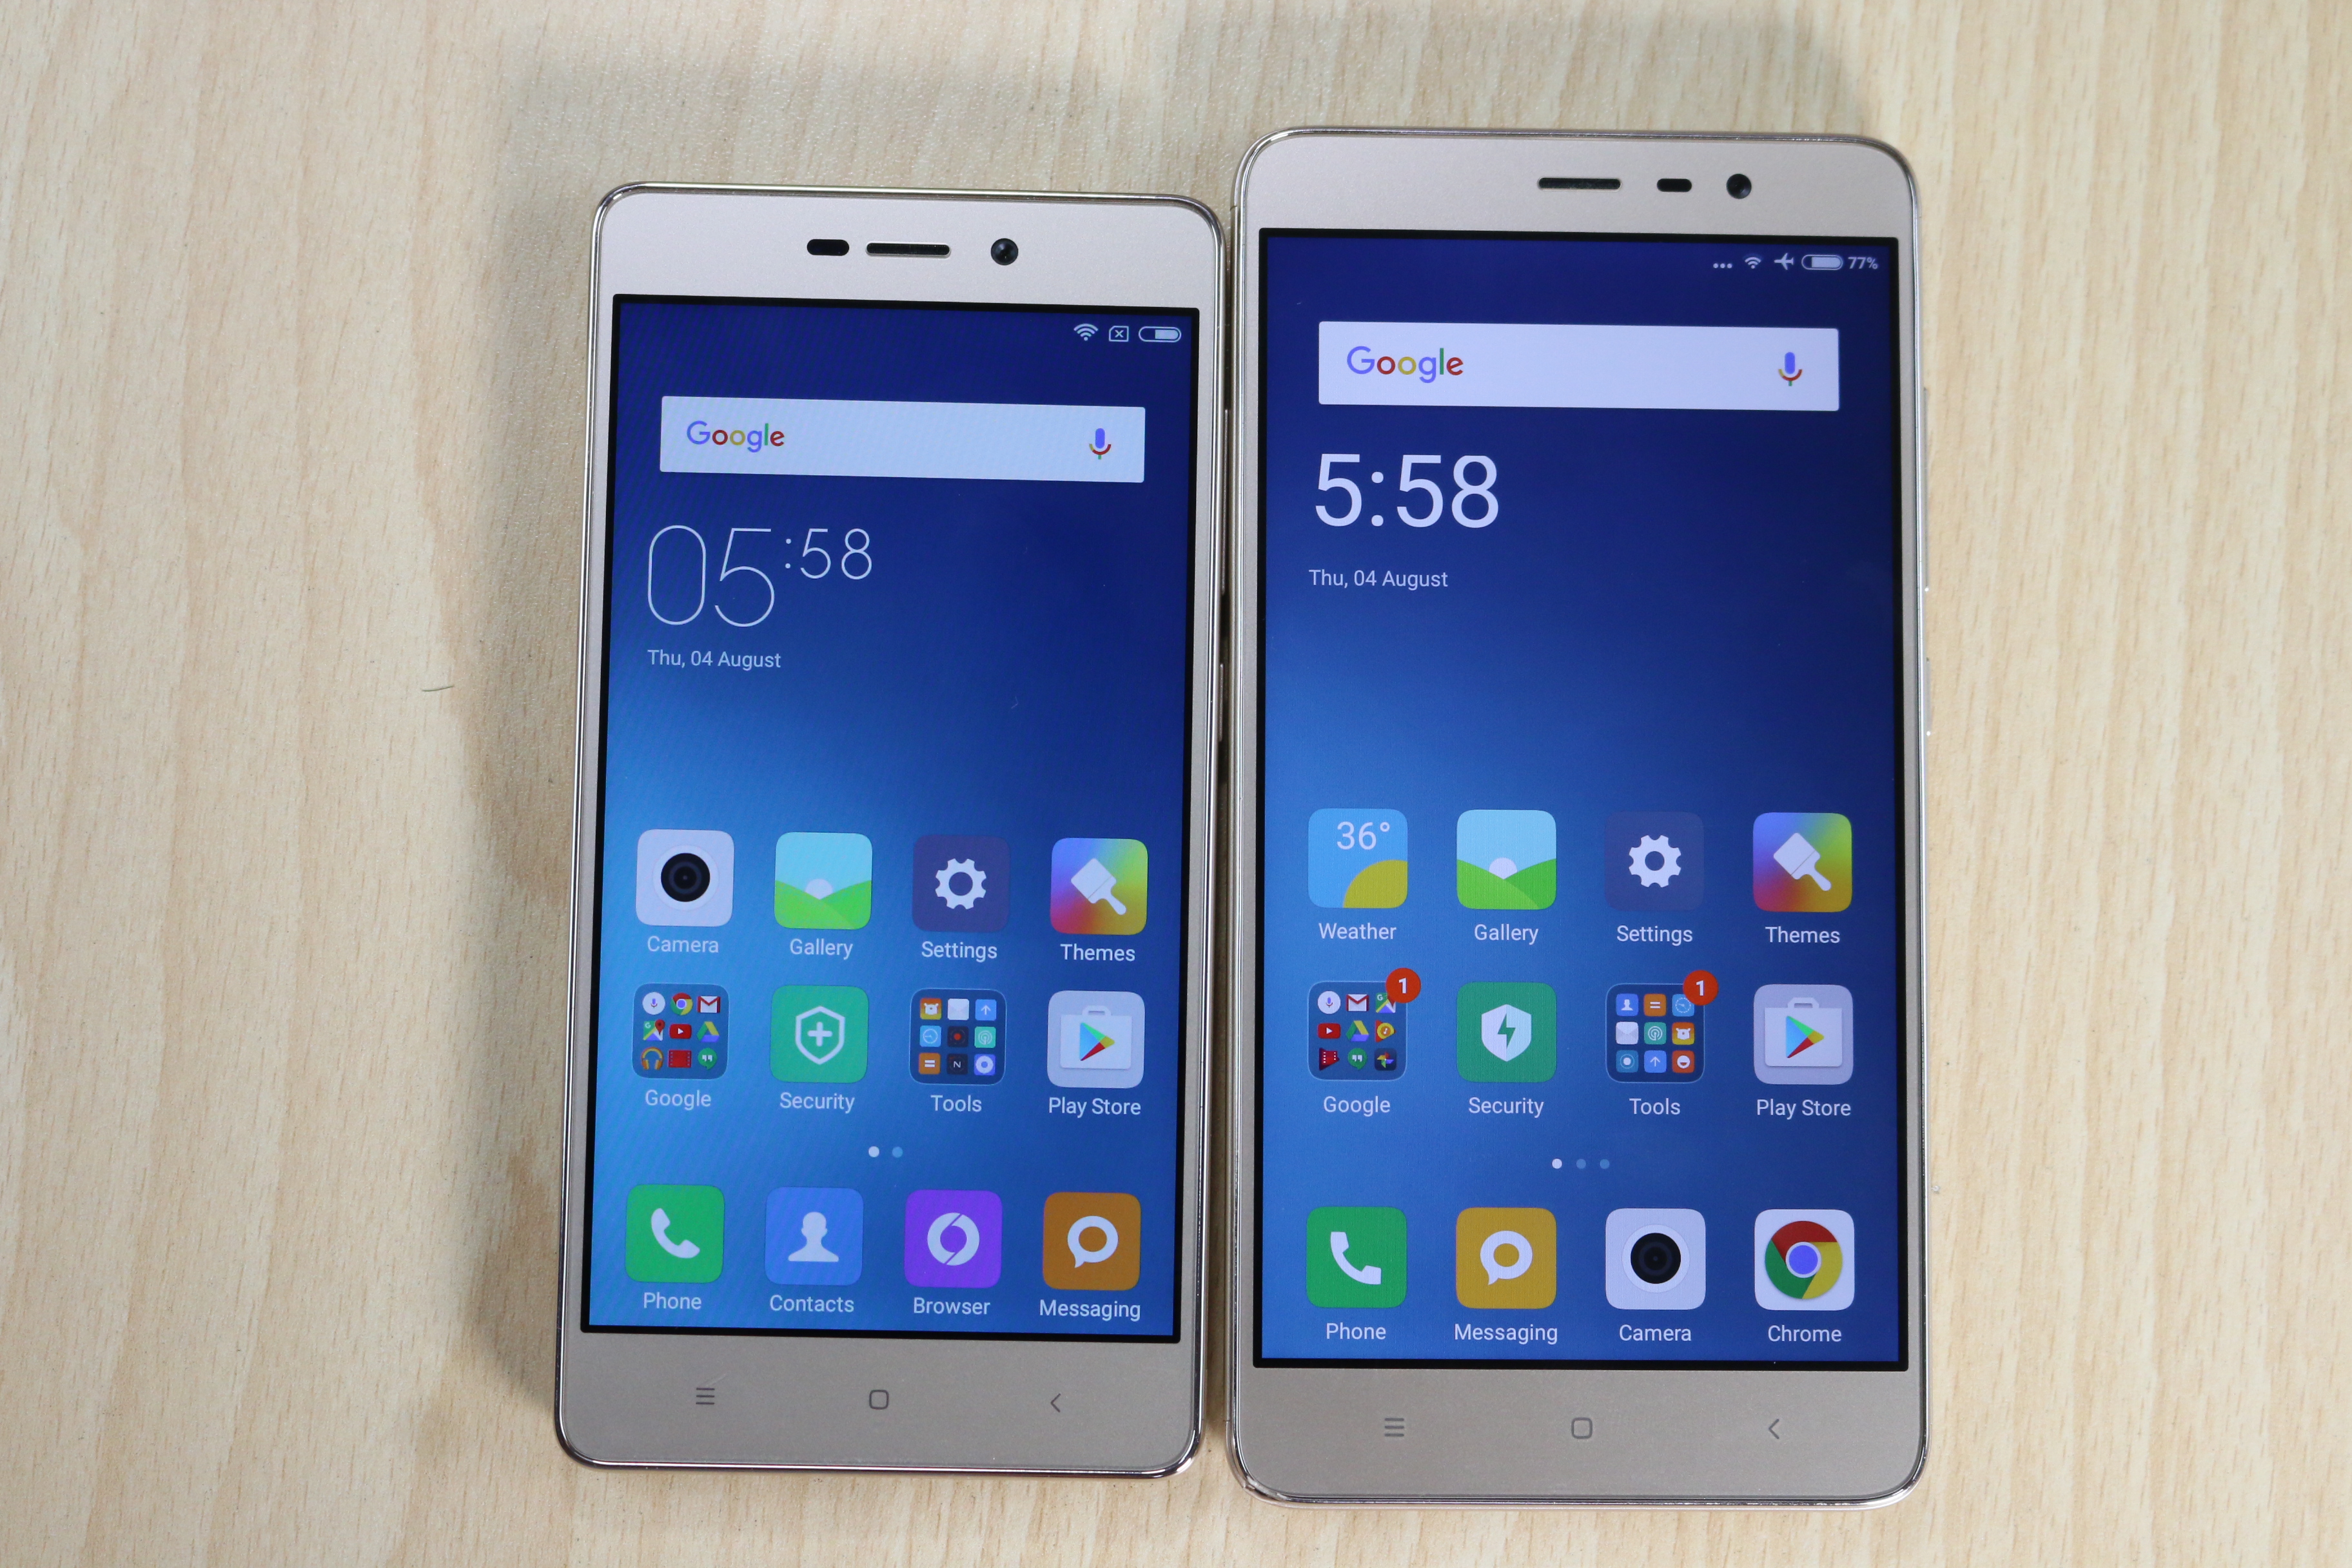 Сравнить телефоны xiaomi redmi. Xiaomi Redmi 3s. Xiaomi Redmi Note 3s. Redmi 3. Redmi 3 vs Redmi 3s.